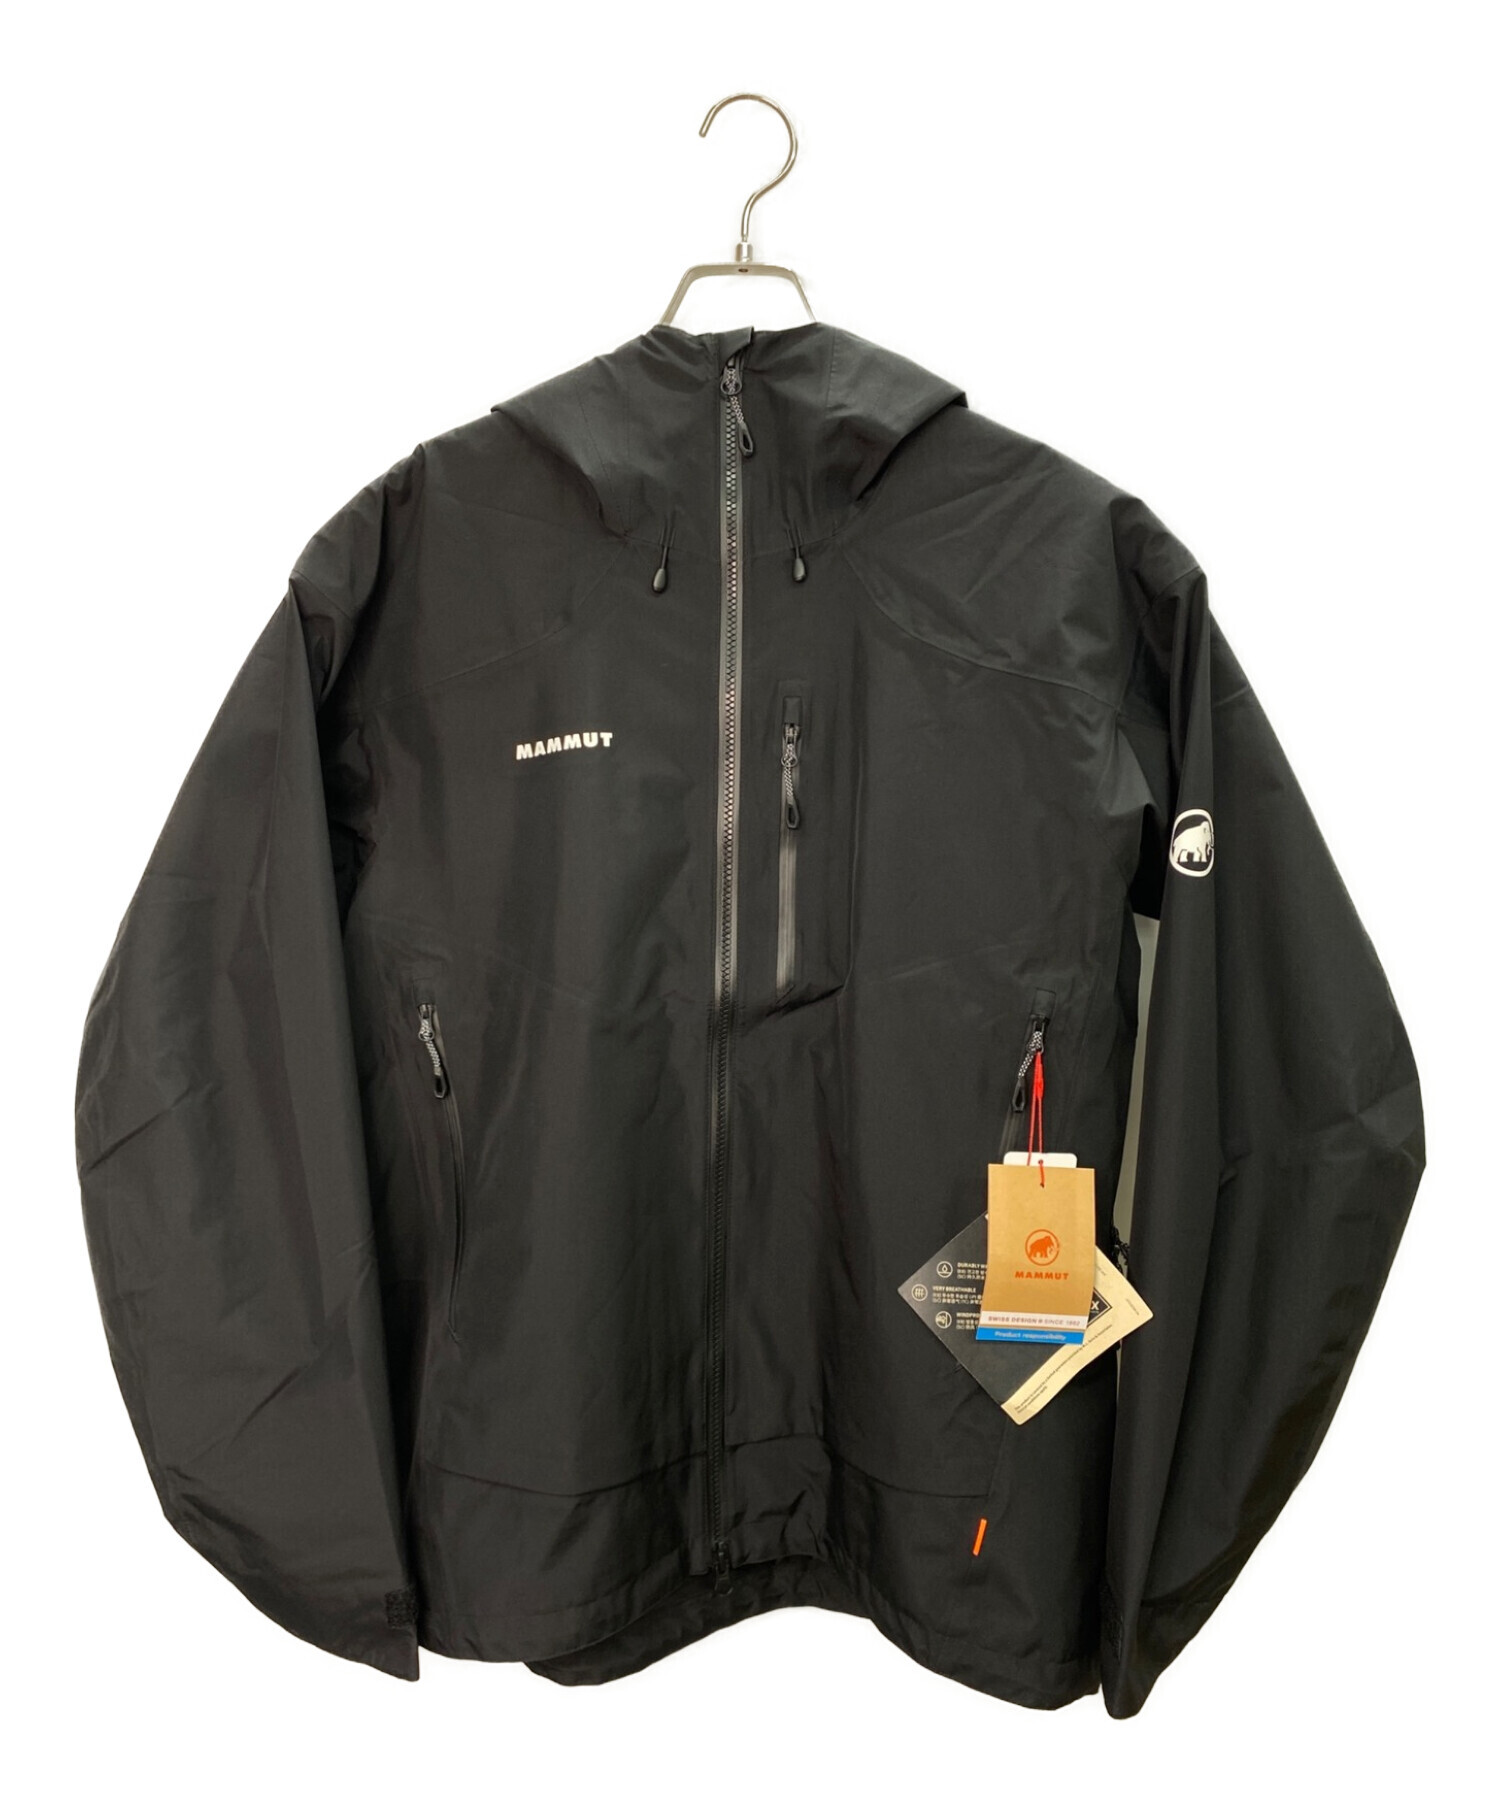 MAMMUT (マムート) ゴアテックスジャケット ブラック サイズ:L 未使用品